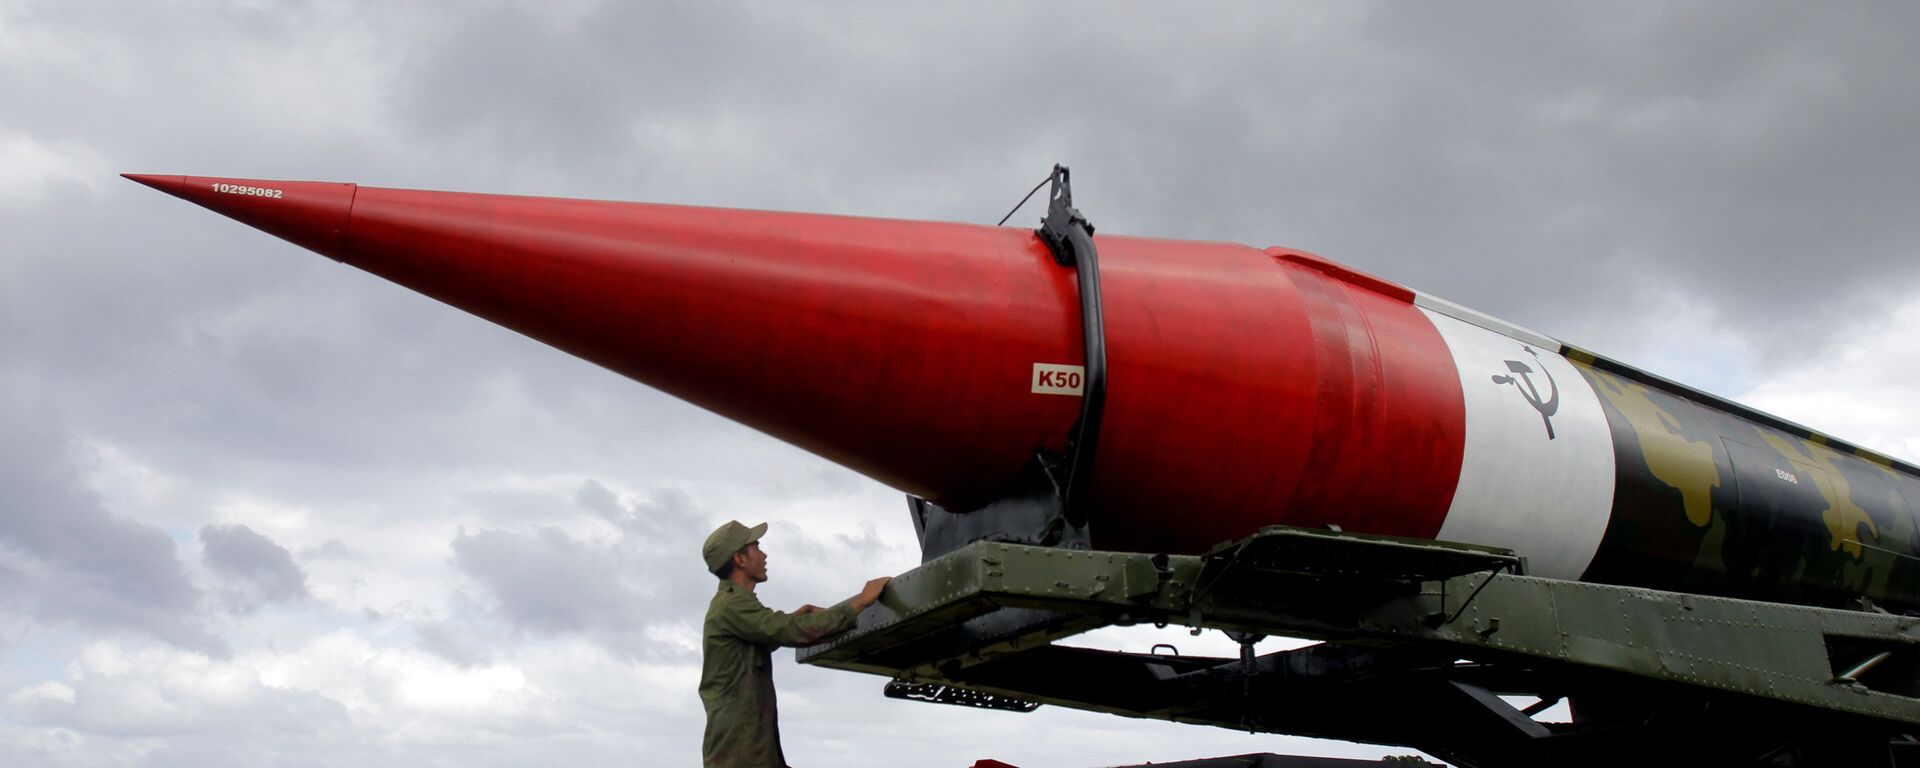 Misil soviético vacío de los tiempos de la crisis de los misiles del Caribe, expuesto en el complejo militar Morro Cabana en La Habana, Cuba (archivo) - Sputnik Mundo, 1920, 05.10.2022